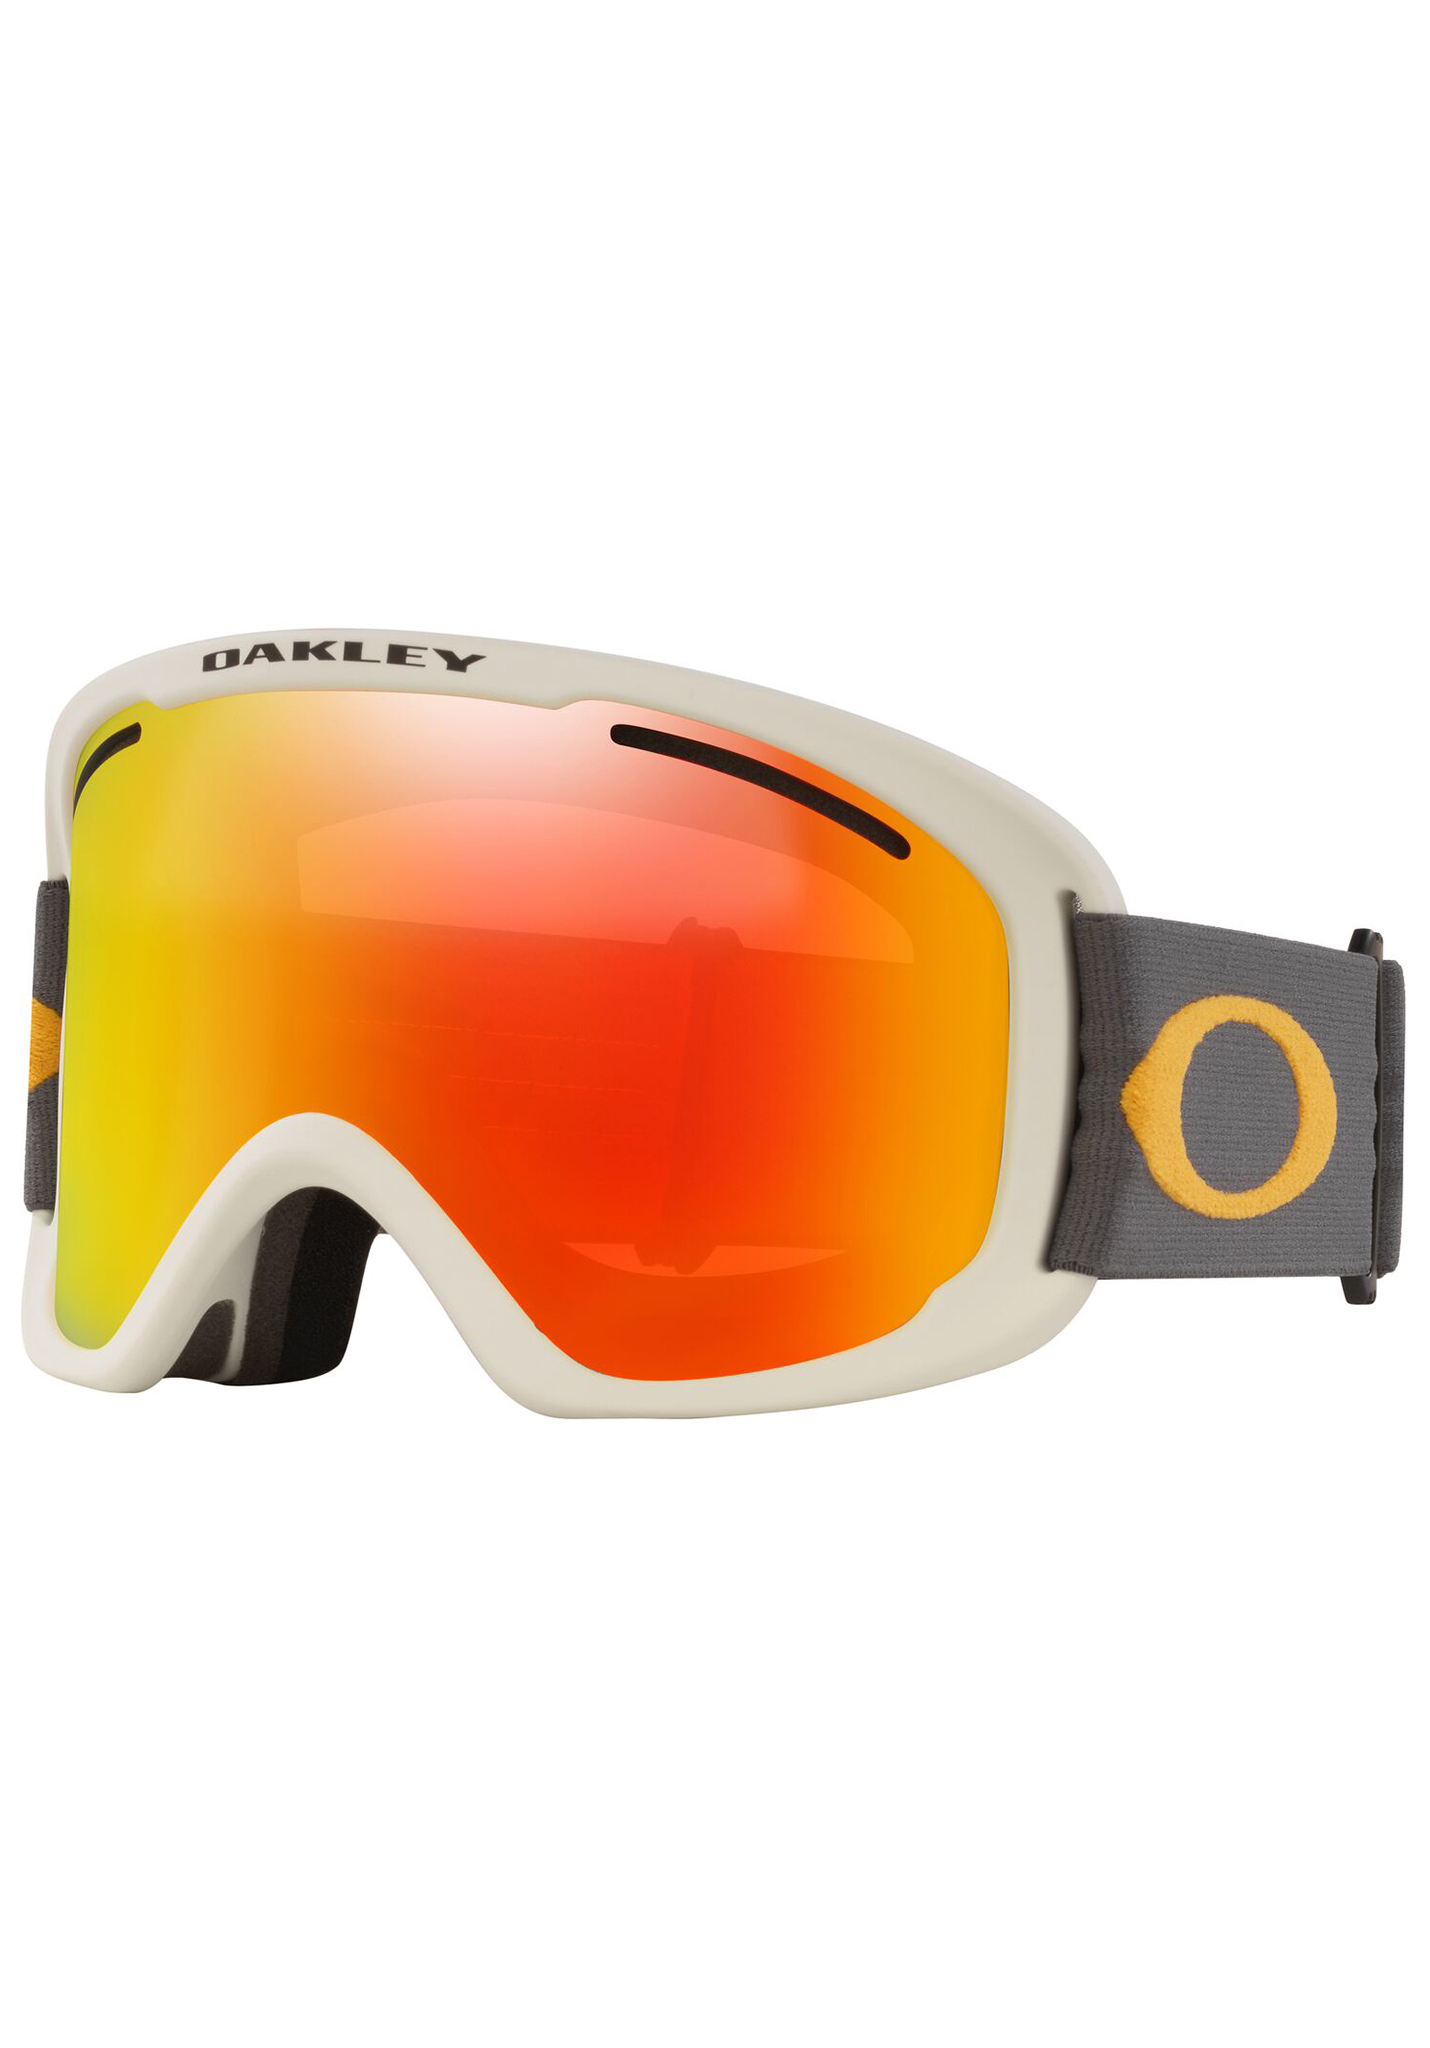 Oakley O Frame 2.0 Pro XL Snowboardbrillen dunkelgrau orange/feueriridium & persimone One Size